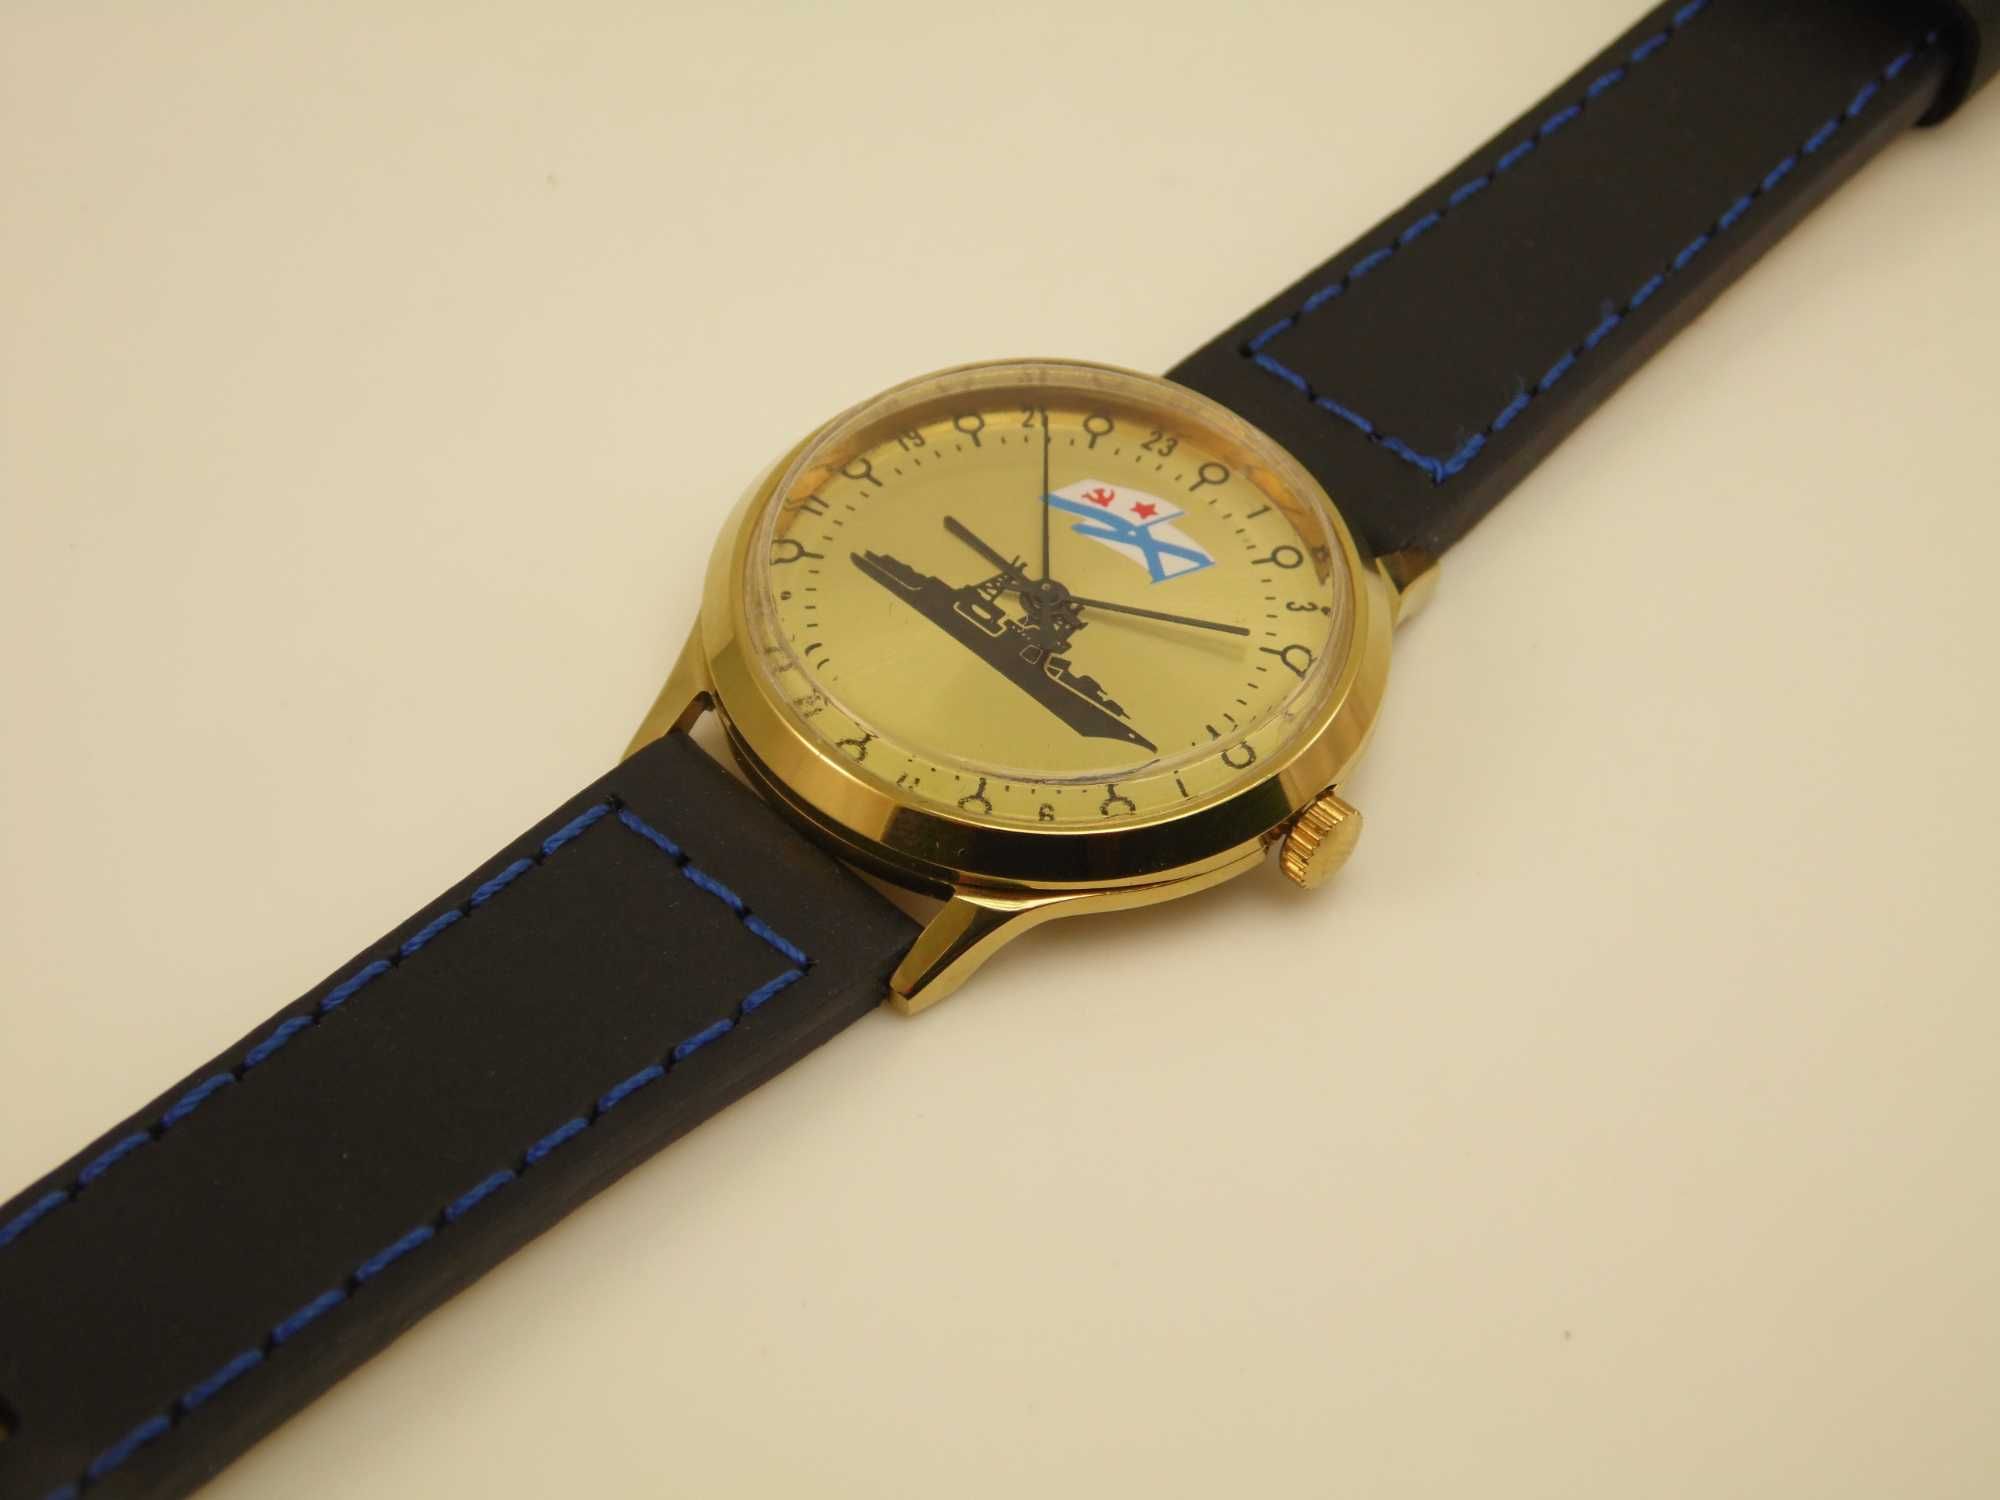 Rosyjski mechaniczny zegarek Rakieta 24H - 24 godziny